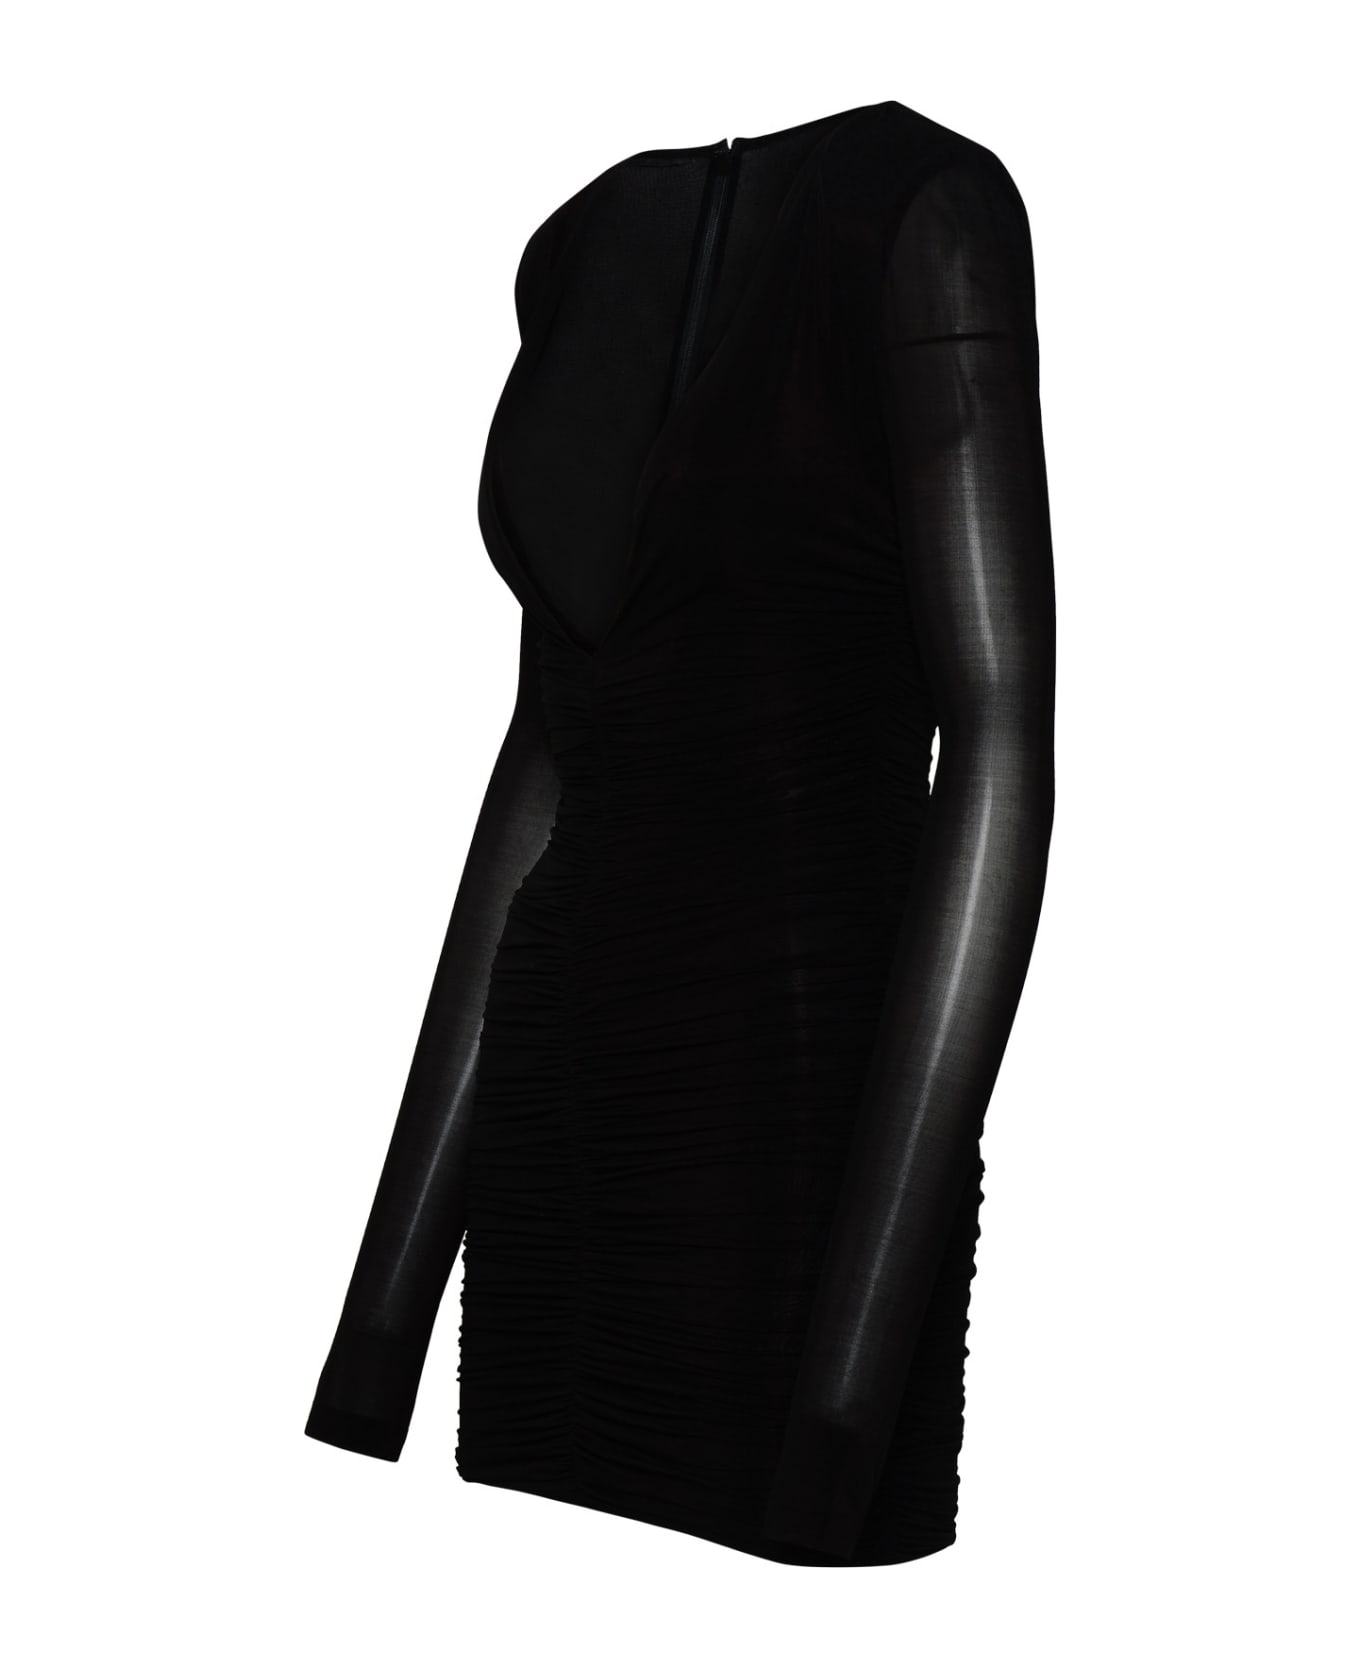 Saint Laurent Black Cupro Blend Dress - Black